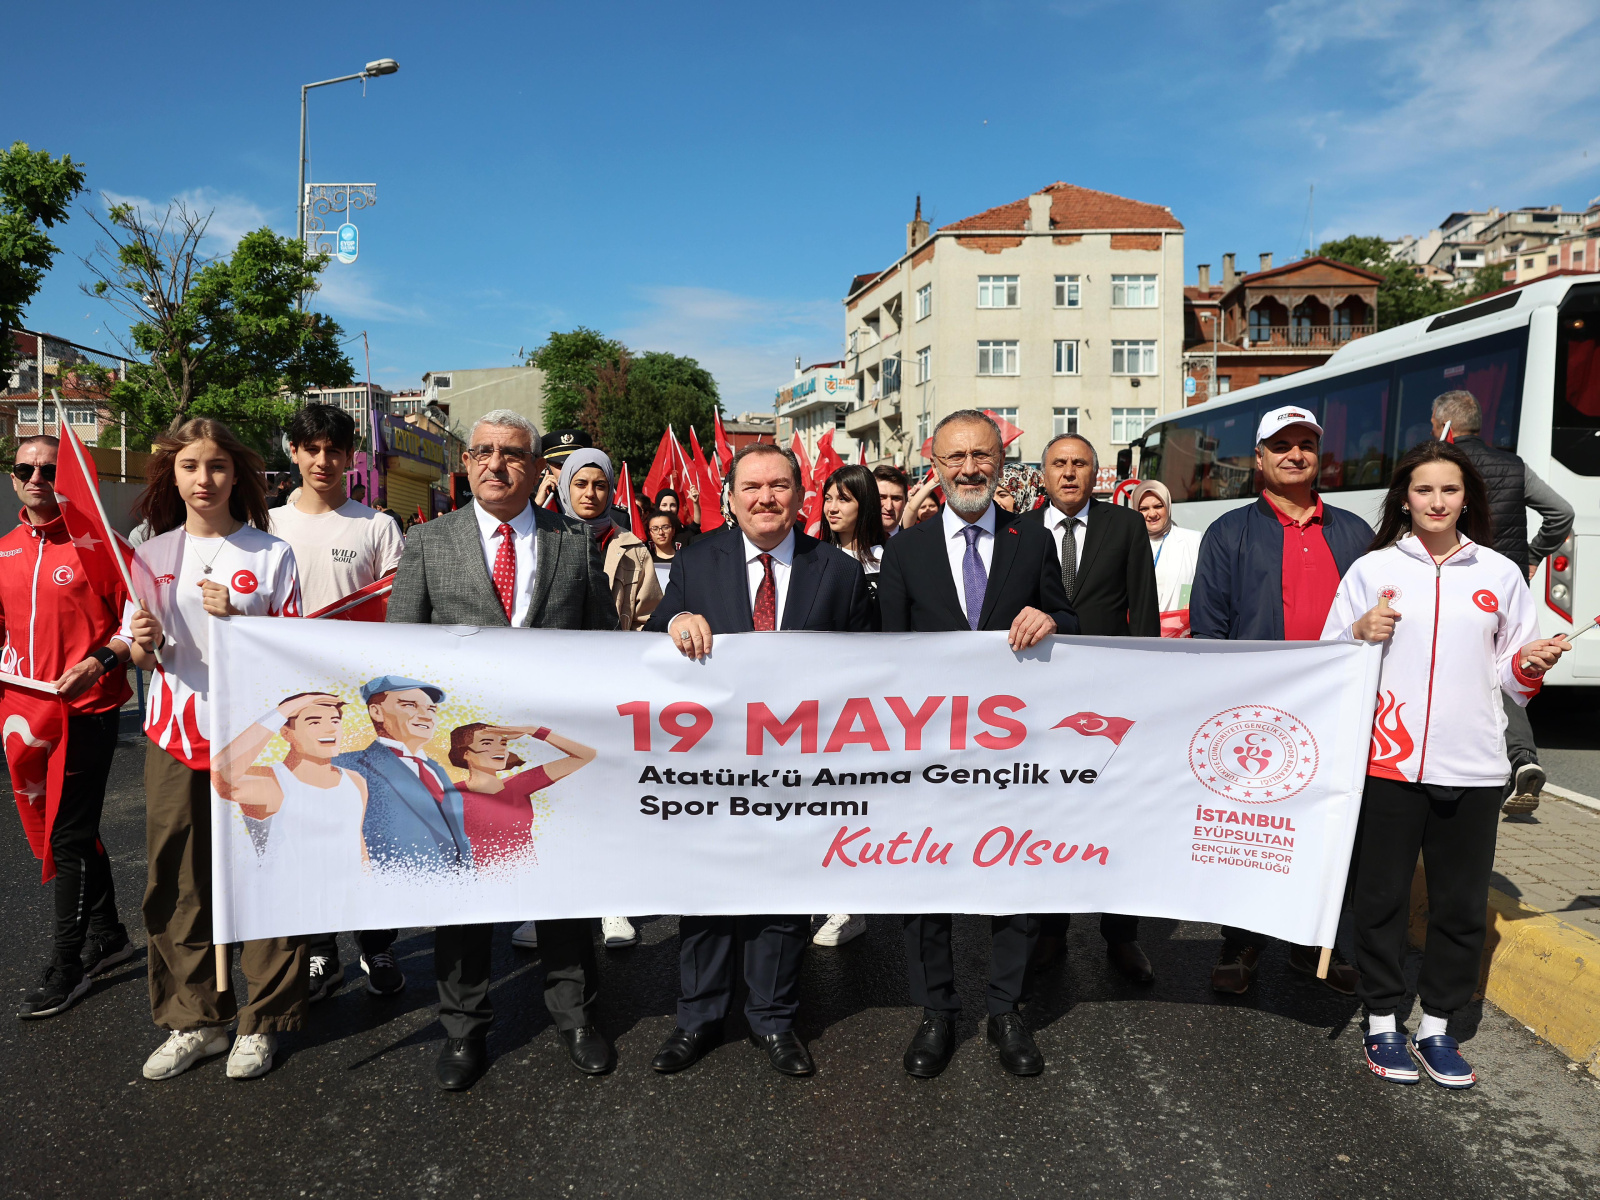 Eyüpsultan'da 19 Mayıs kutlamaları gençlik yürüyüşüyle başladı